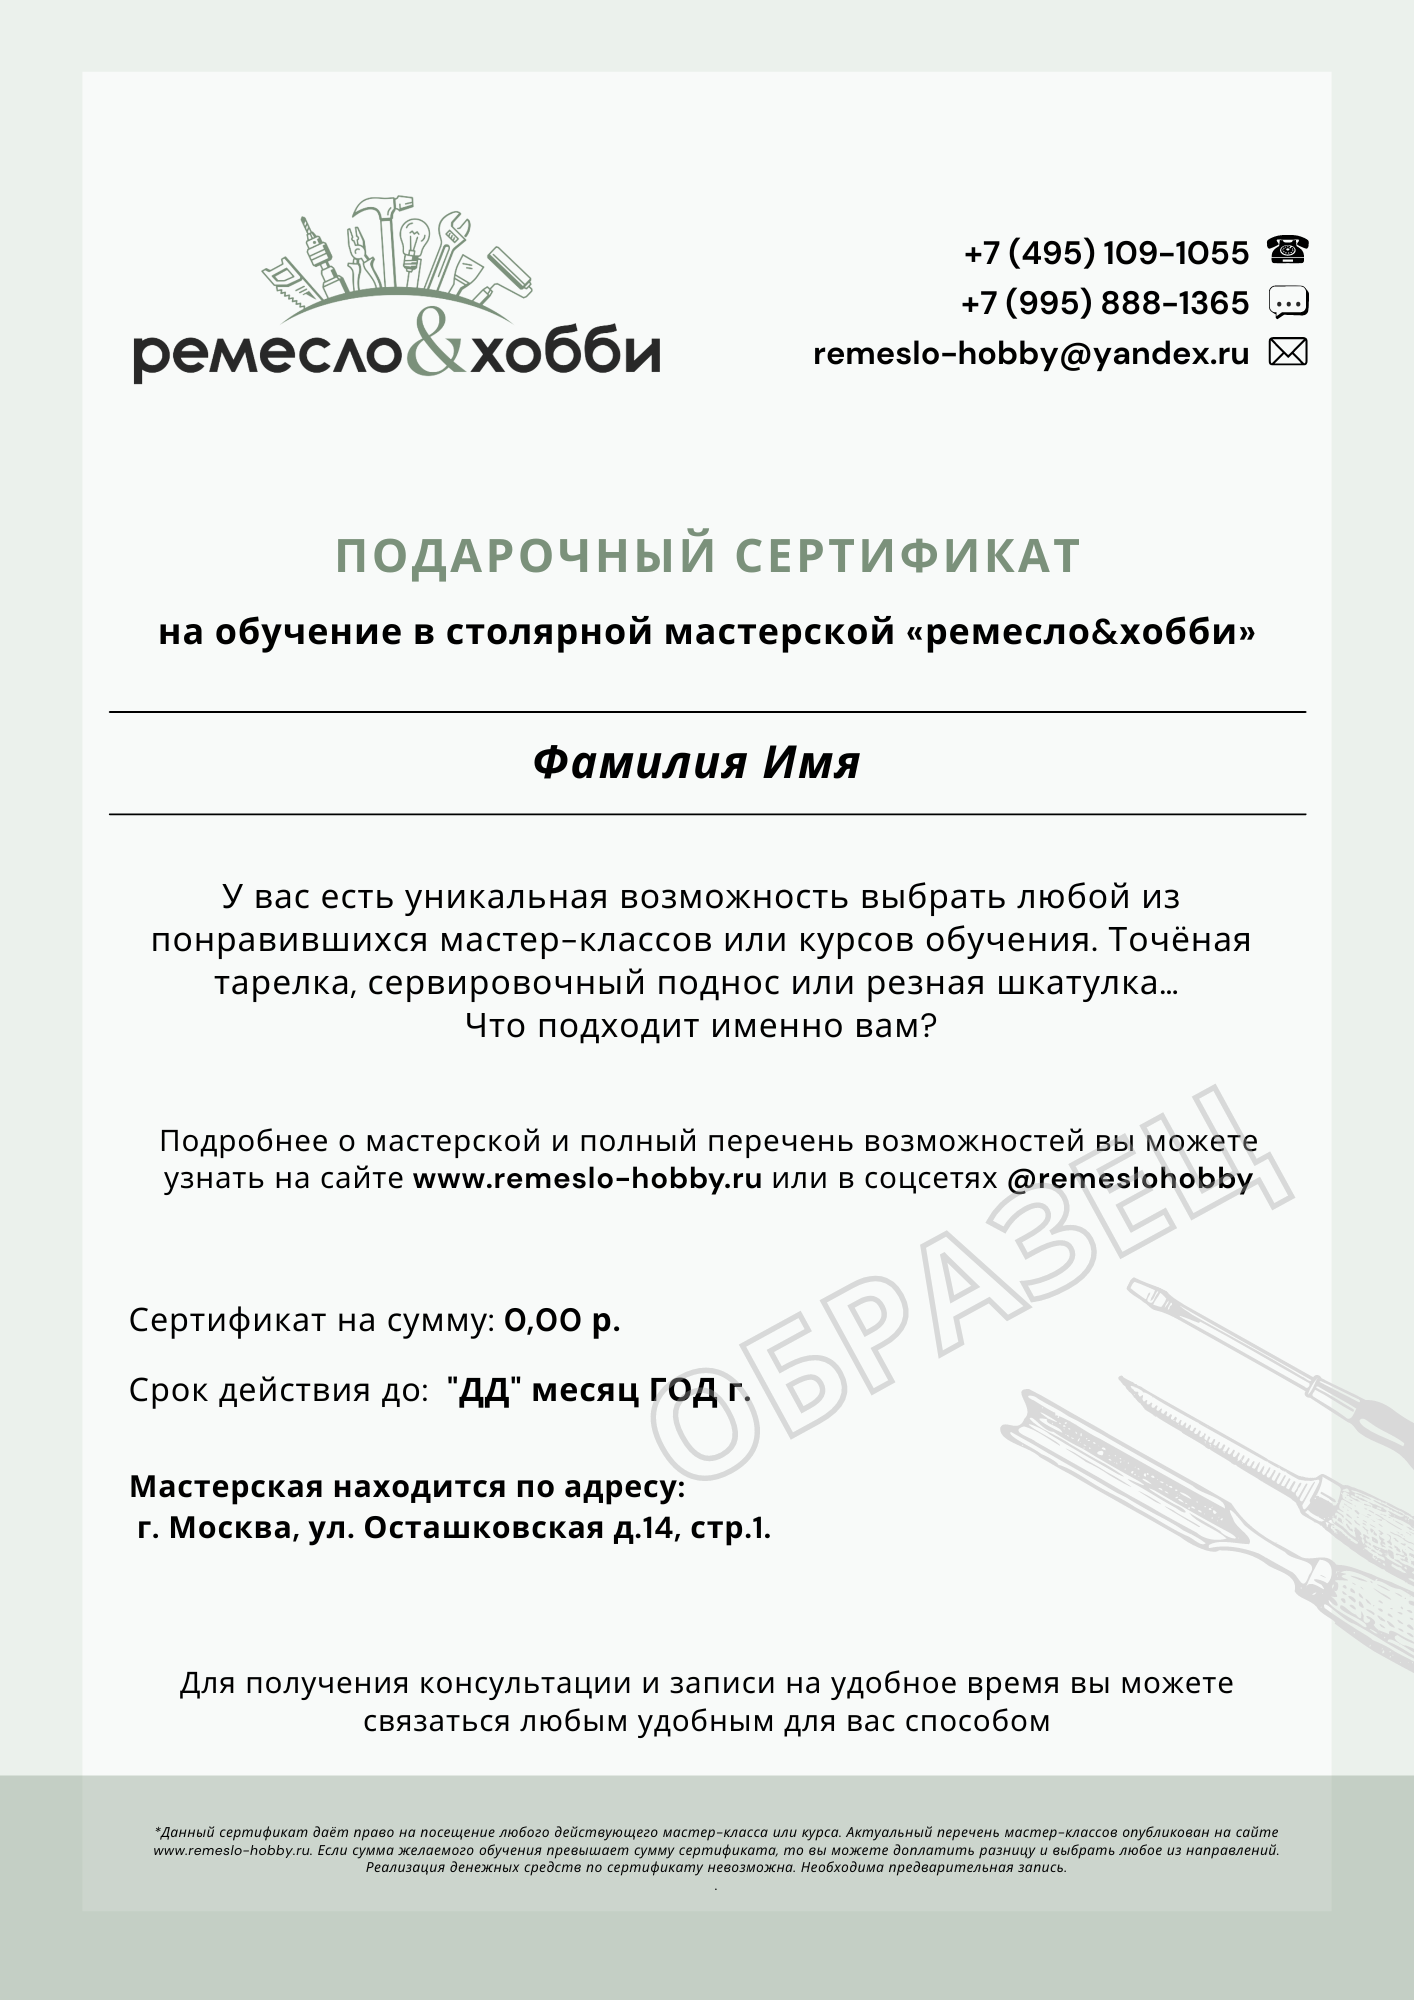 Подарки-впечатления в магазине подарочных сертификатов в Москве EVOI